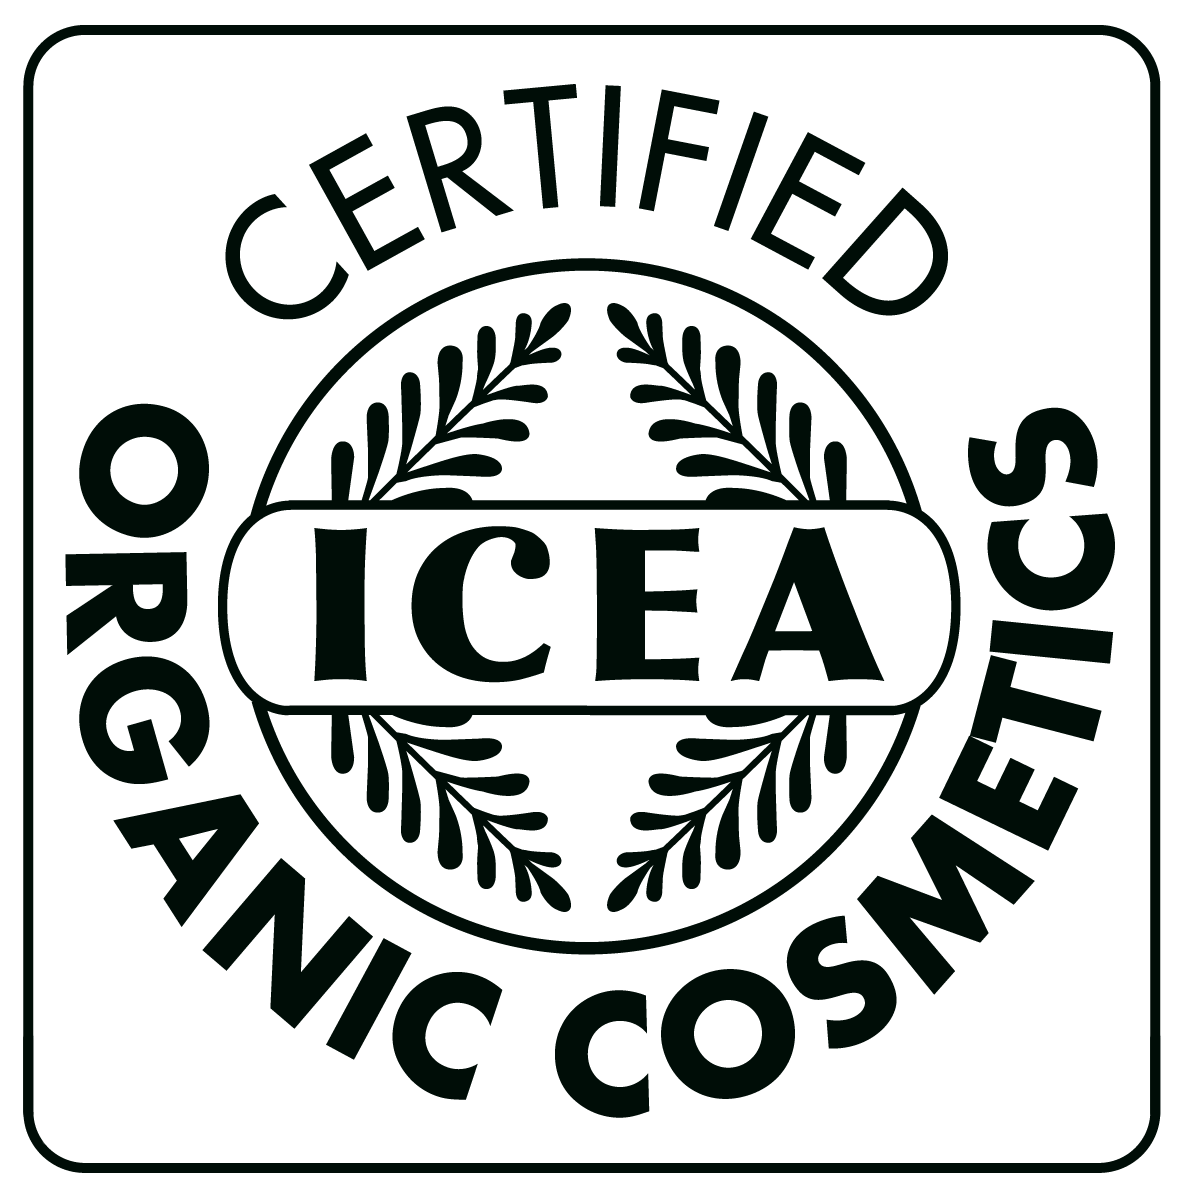 ICEA Organic Cosmetics Logosu.png (99 KB)